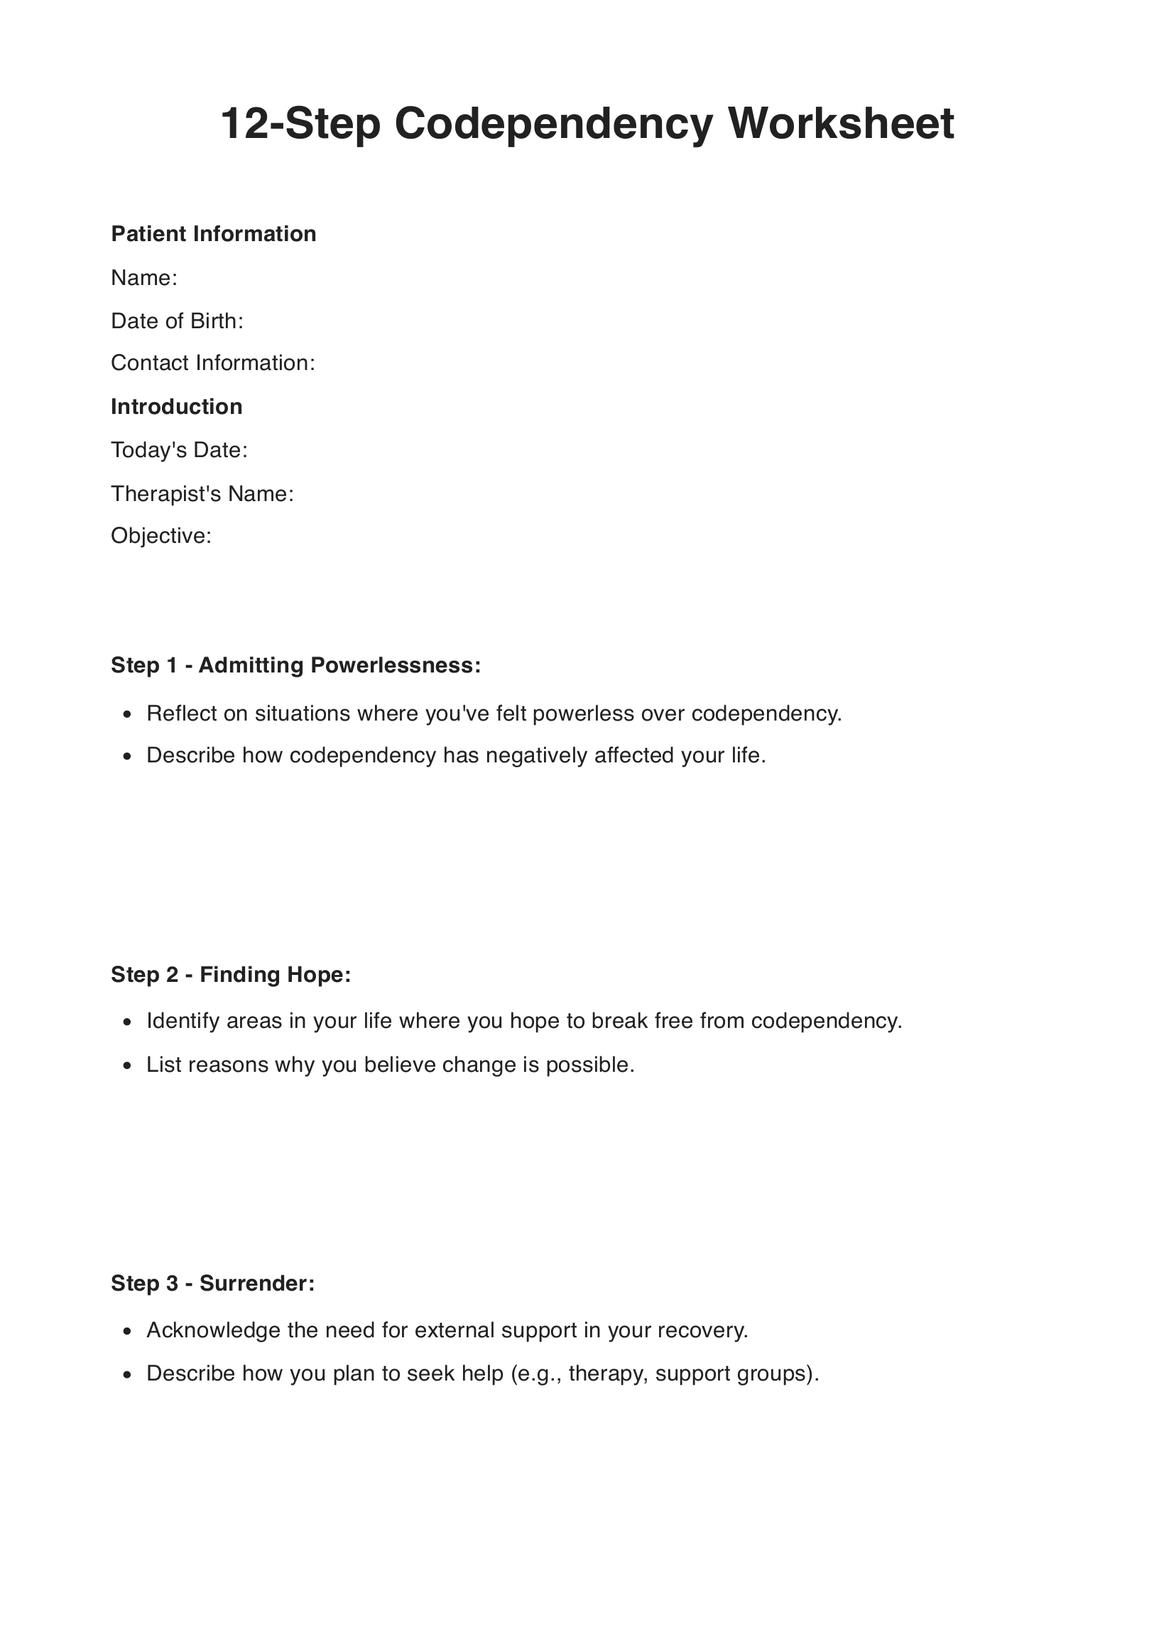 12 Step Codependency Worksheet PDF Example